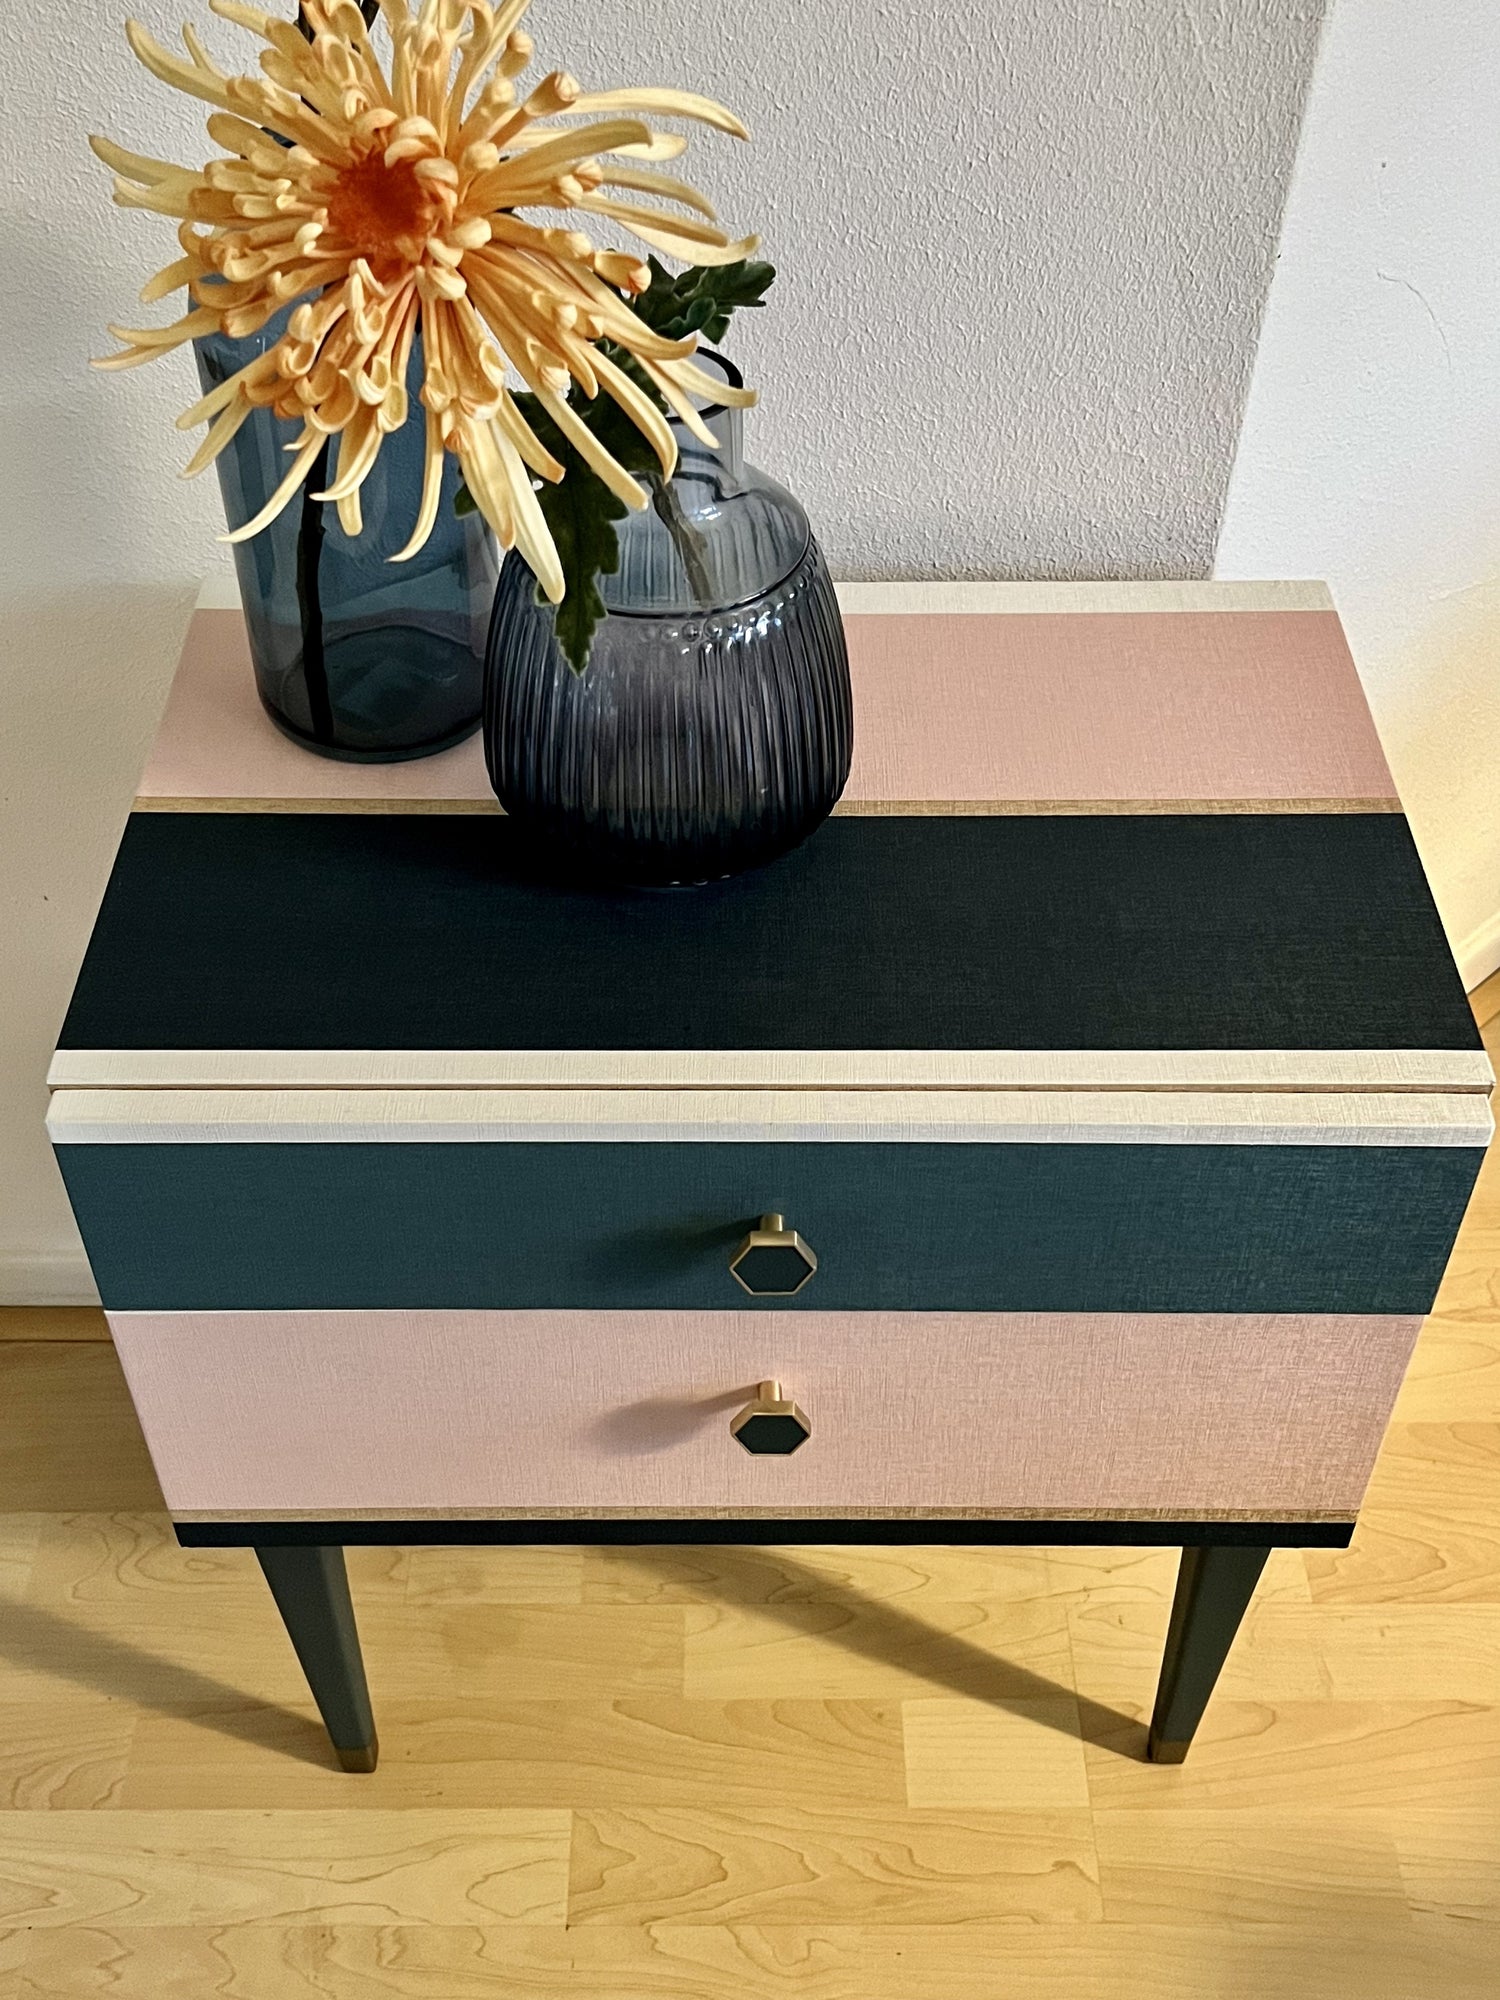 Vintage retro kastje gestreept in blauw, teal, roze en goud | The Vintage Vibe